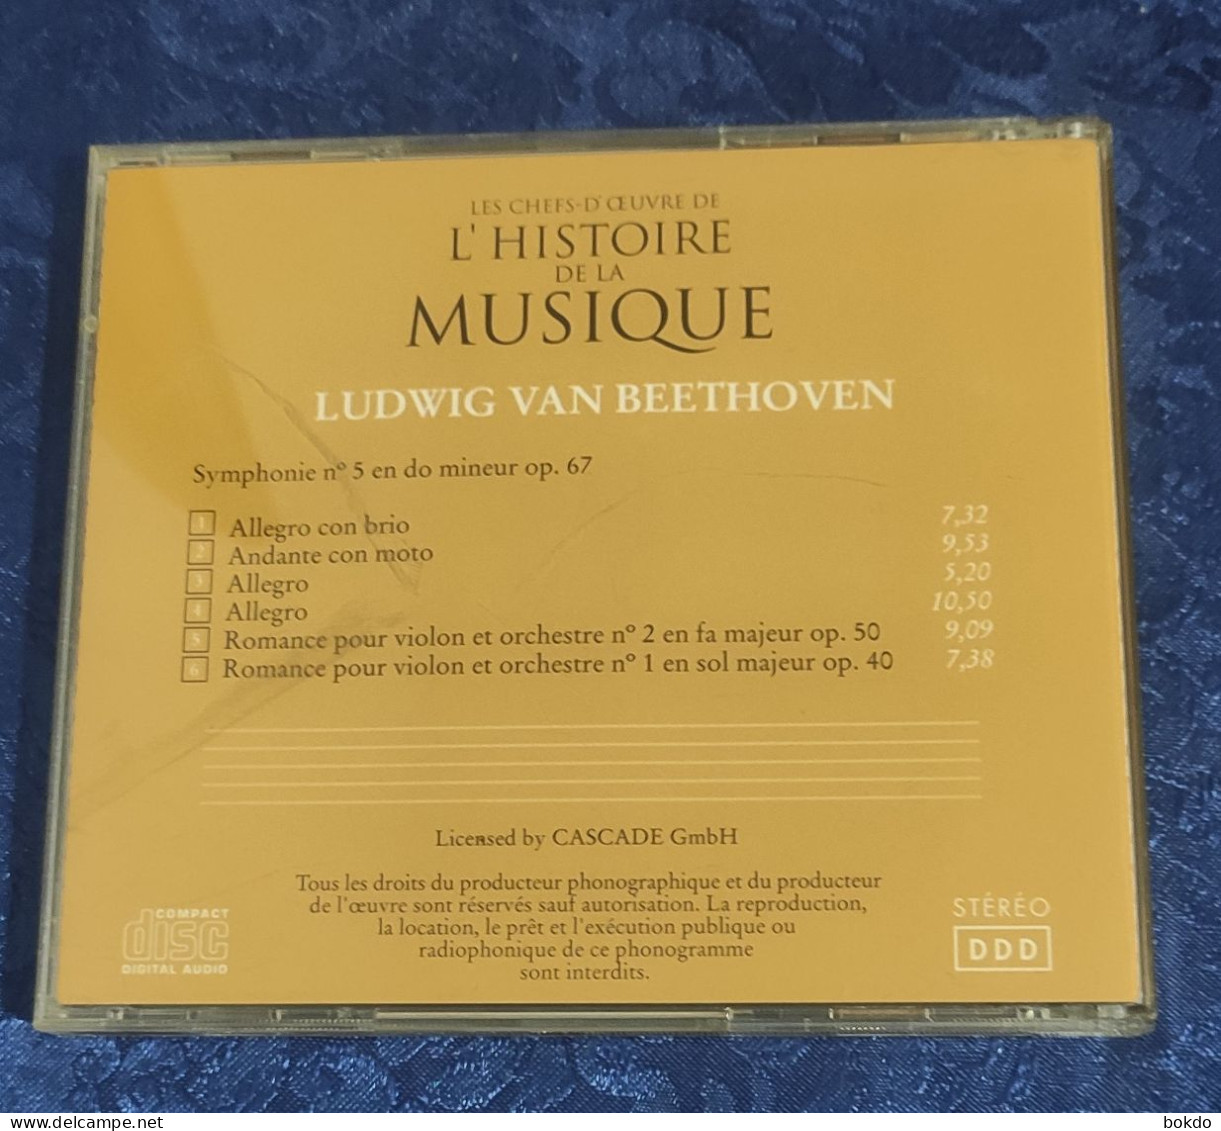 Ludwig Van Beethoven - Symphonie N° 5 - Romances Pour Violon N) 1 Et 2 - Classical